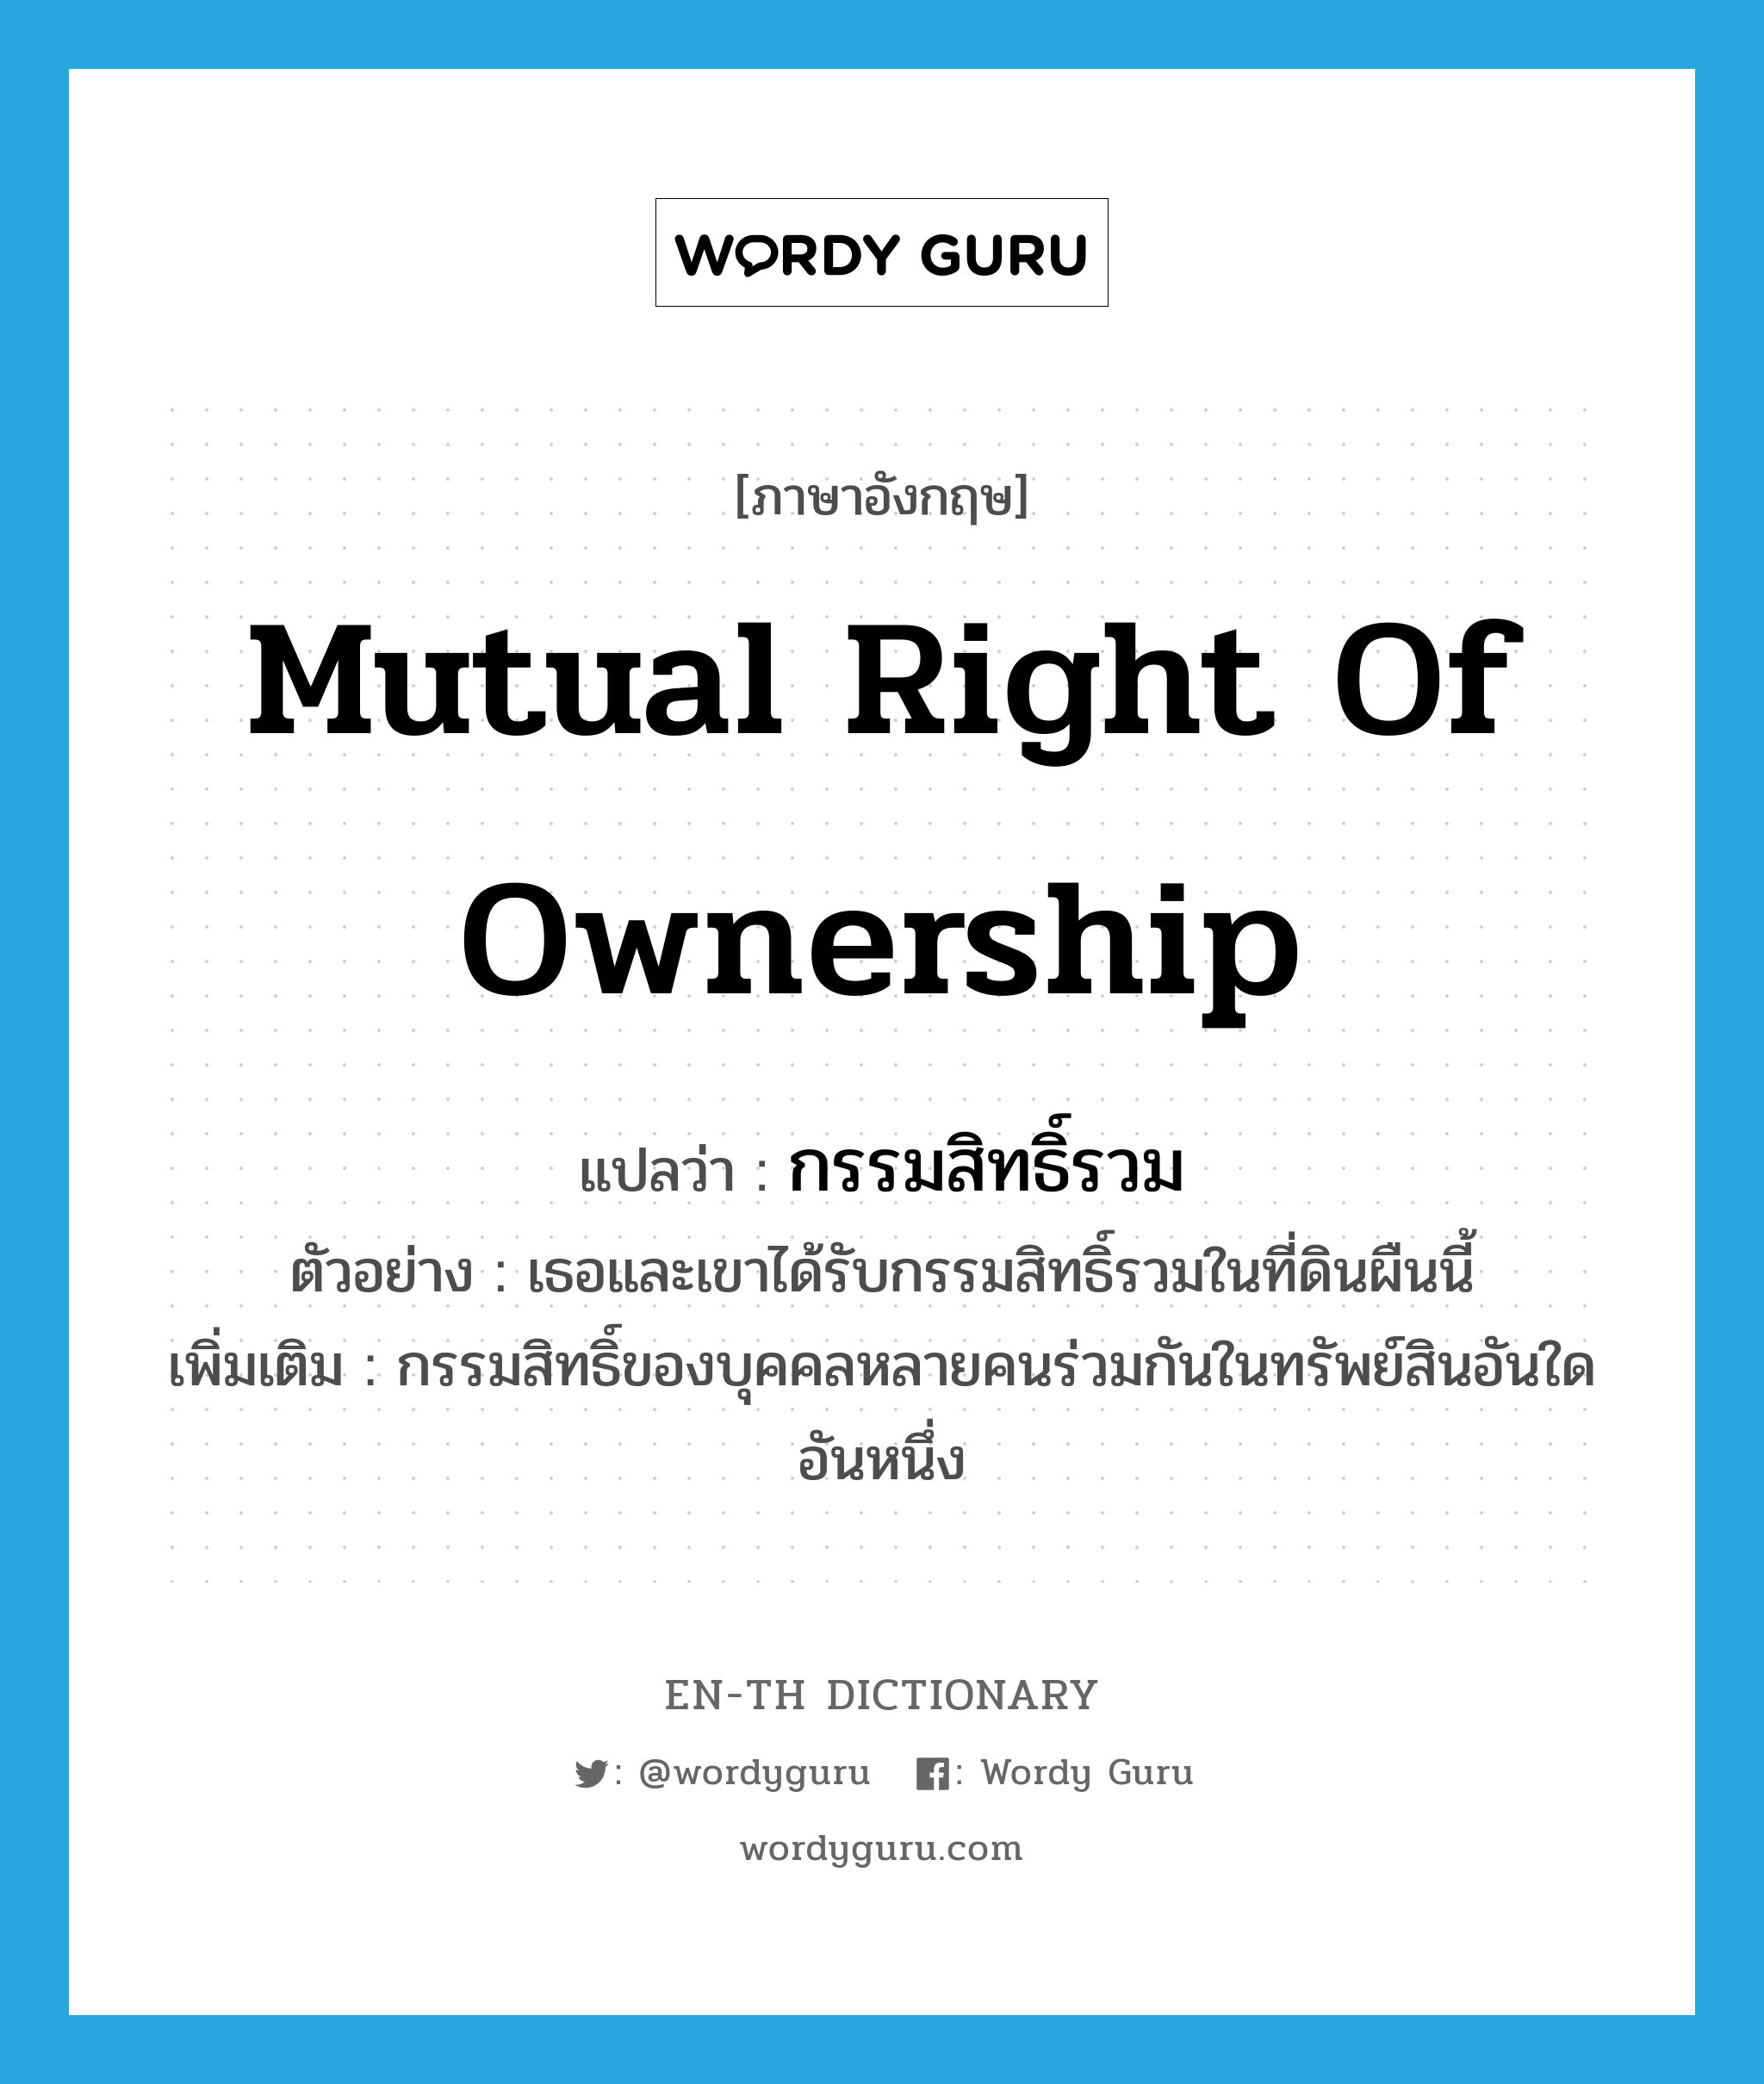 mutual right of ownership แปลว่า?, คำศัพท์ภาษาอังกฤษ mutual right of ownership แปลว่า กรรมสิทธิ์รวม ประเภท N ตัวอย่าง เธอและเขาได้รับกรรมสิทธิ์รวมในที่ดินผืนนี้ เพิ่มเติม กรรมสิทธิ์ของบุคคลหลายคนร่วมกันในทรัพย์สินอันใดอันหนึ่ง หมวด N